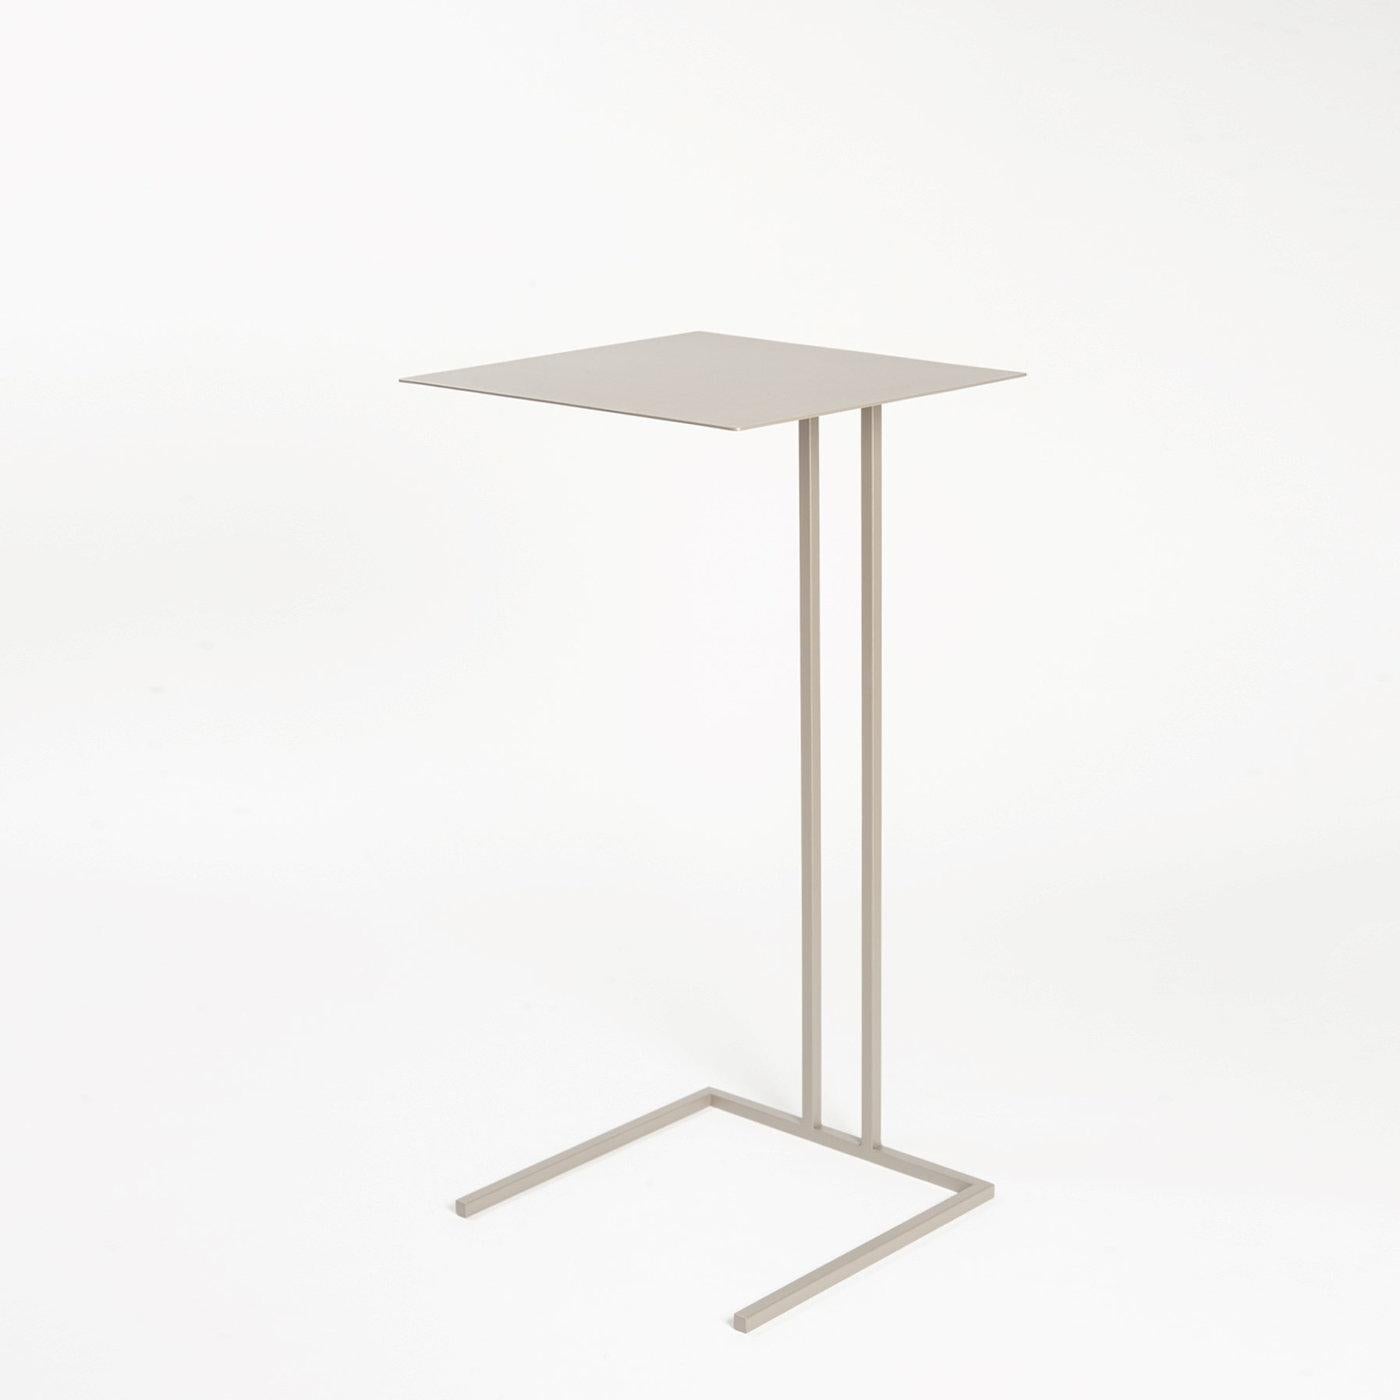 Exercice de minimalisme gracieux, cette table d'appoint tire son nom de l'